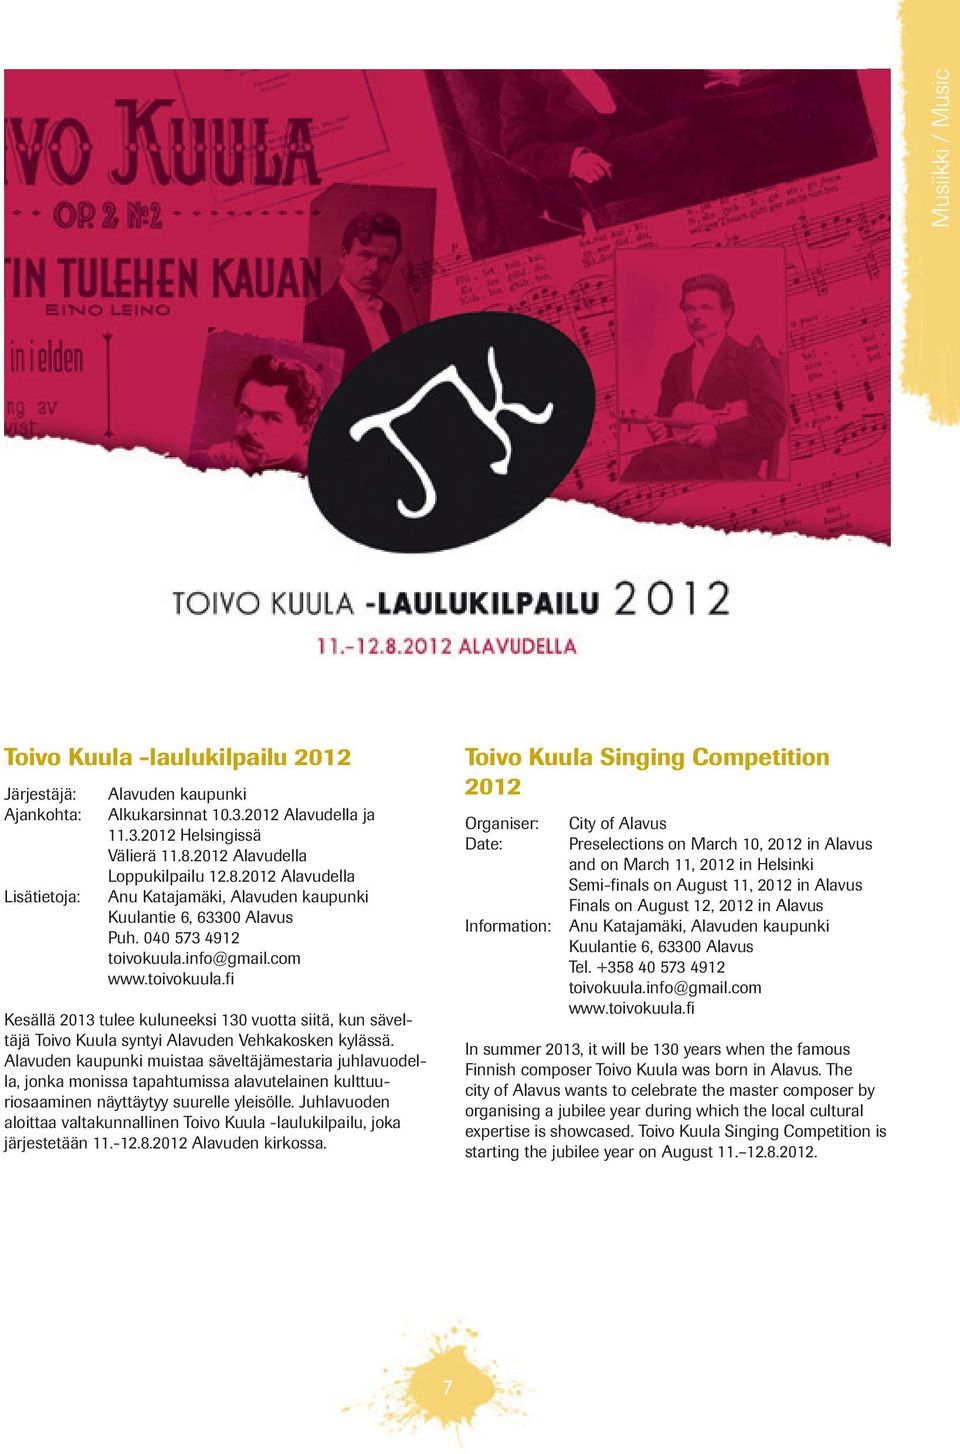 info@gmail.com www.toivokuula.fi Kesällä 2013 tulee kuluneeksi 130 vuotta siitä, kun säveltäjä Toivo Kuula syntyi Alavuden Vehkakosken kylässä.